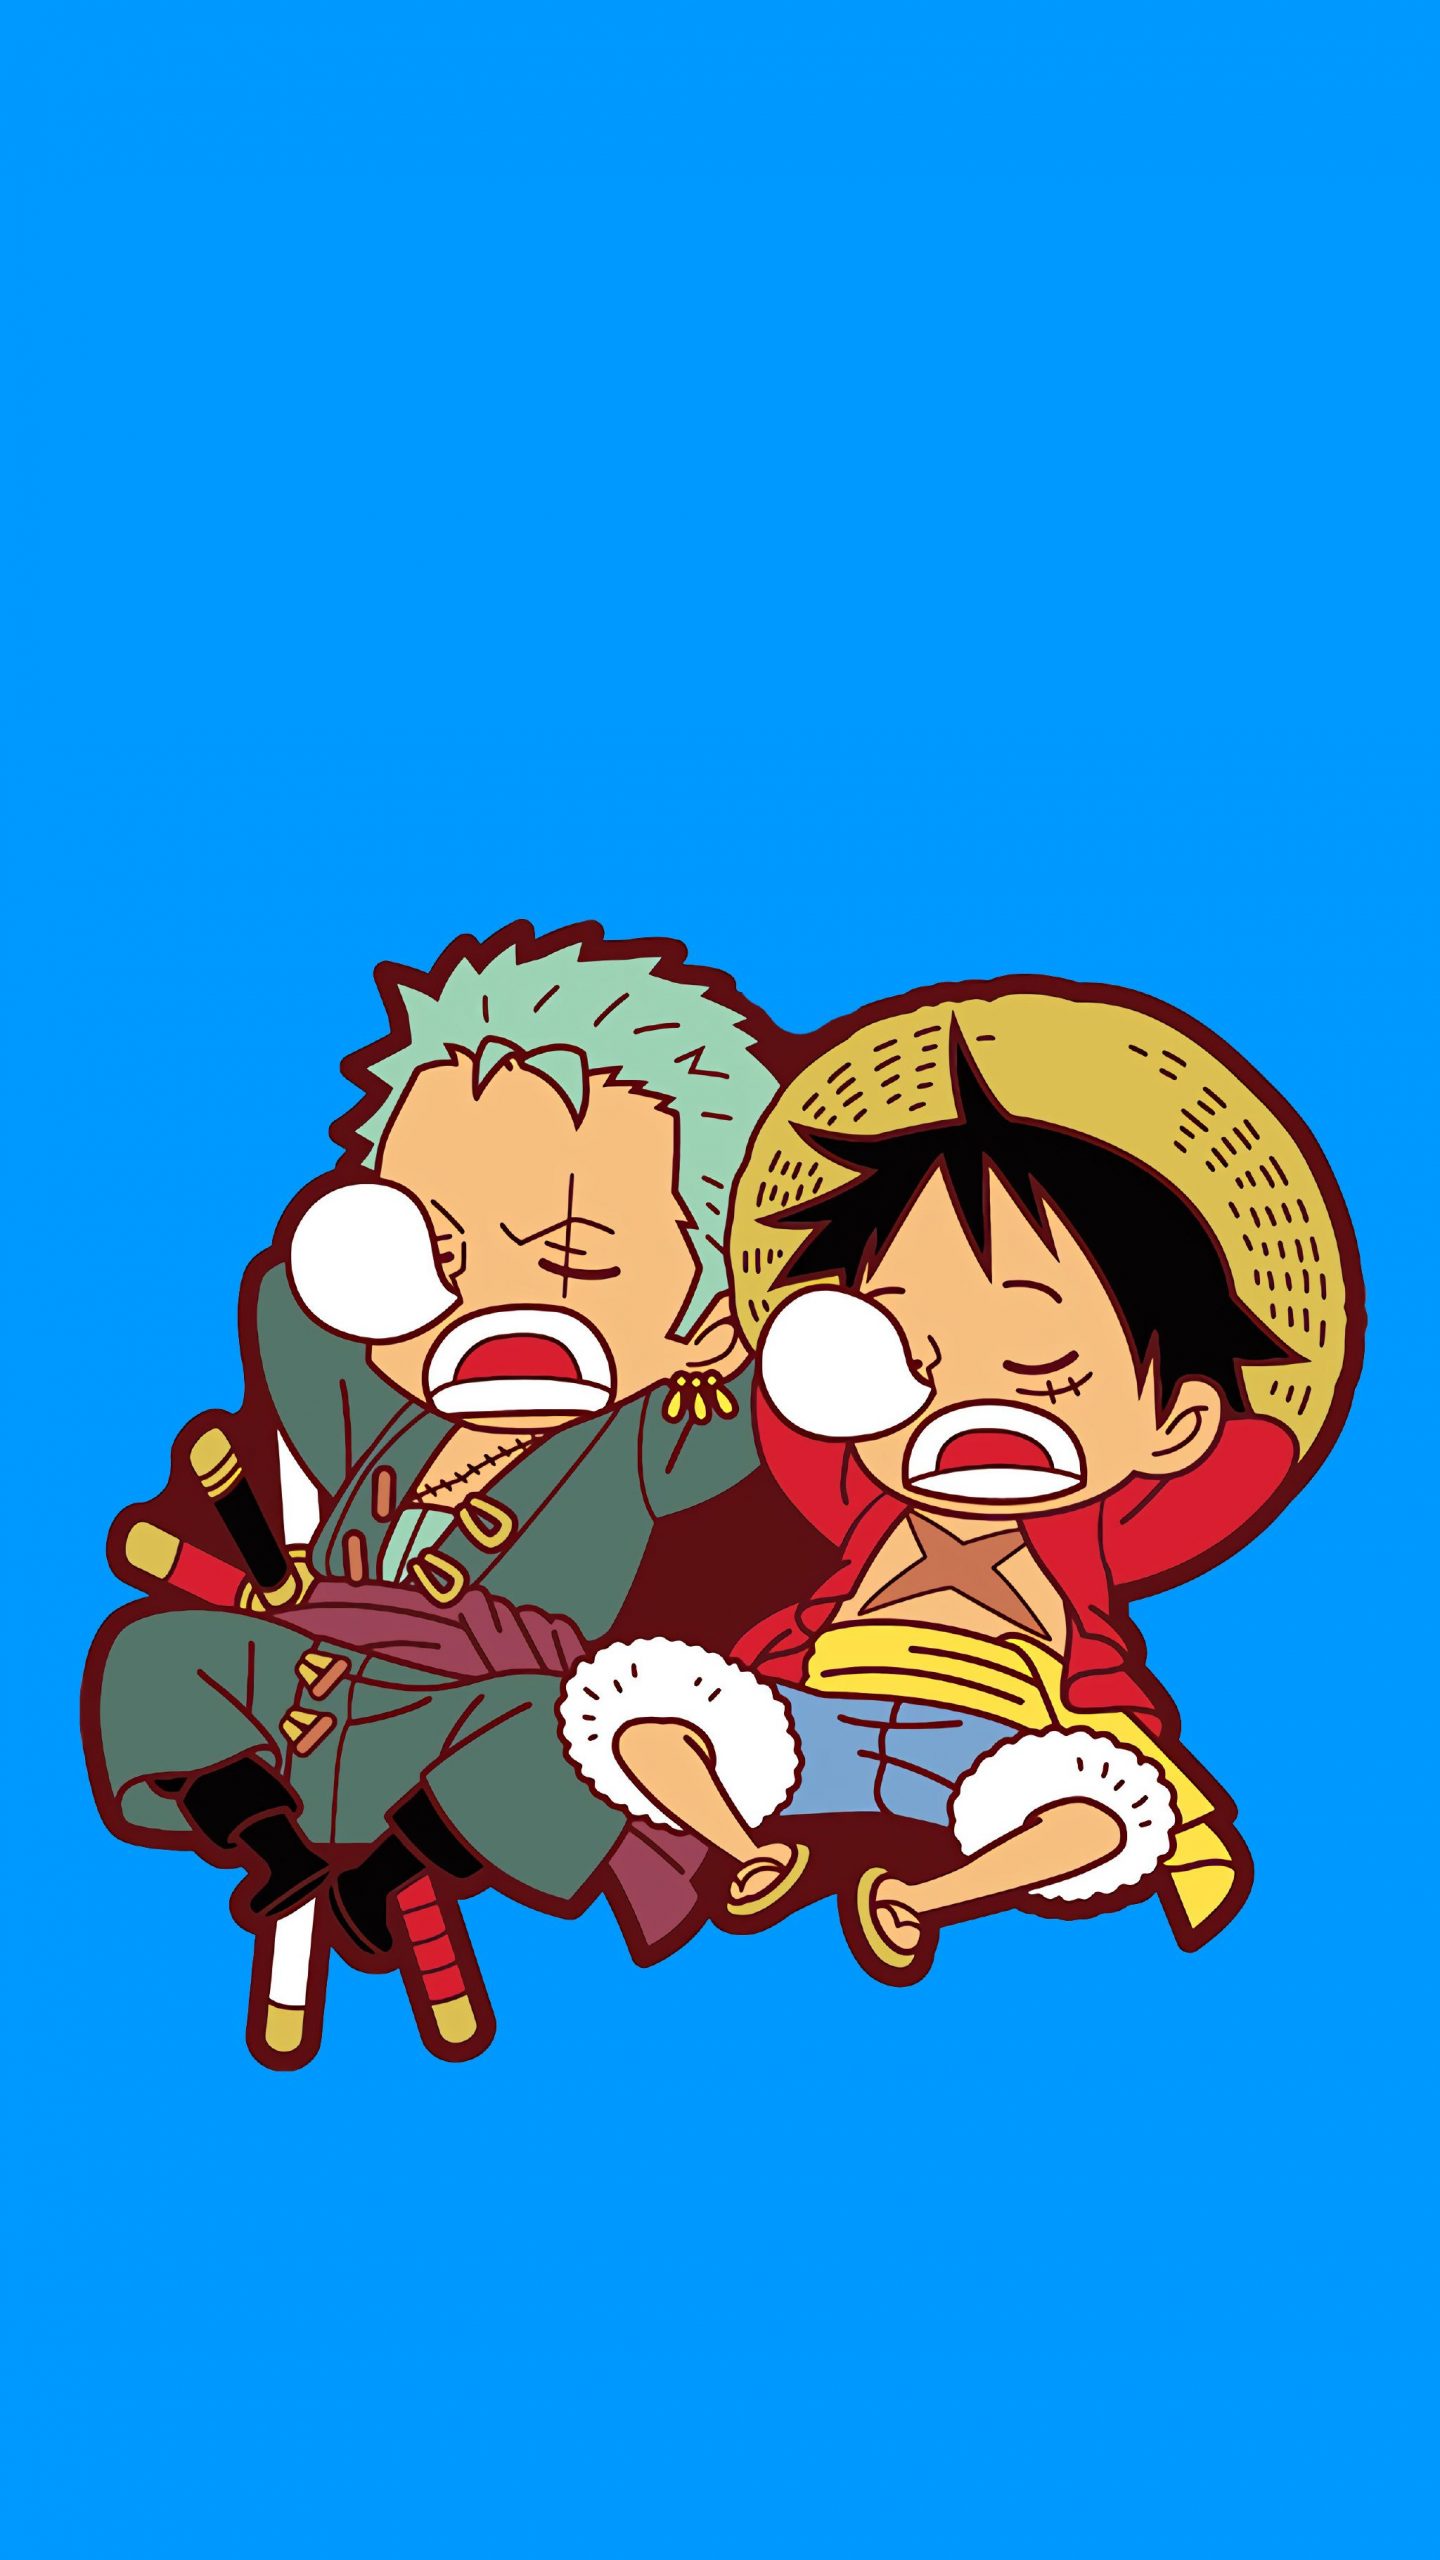 Ảnh chibi One Piece cute dễ thương.